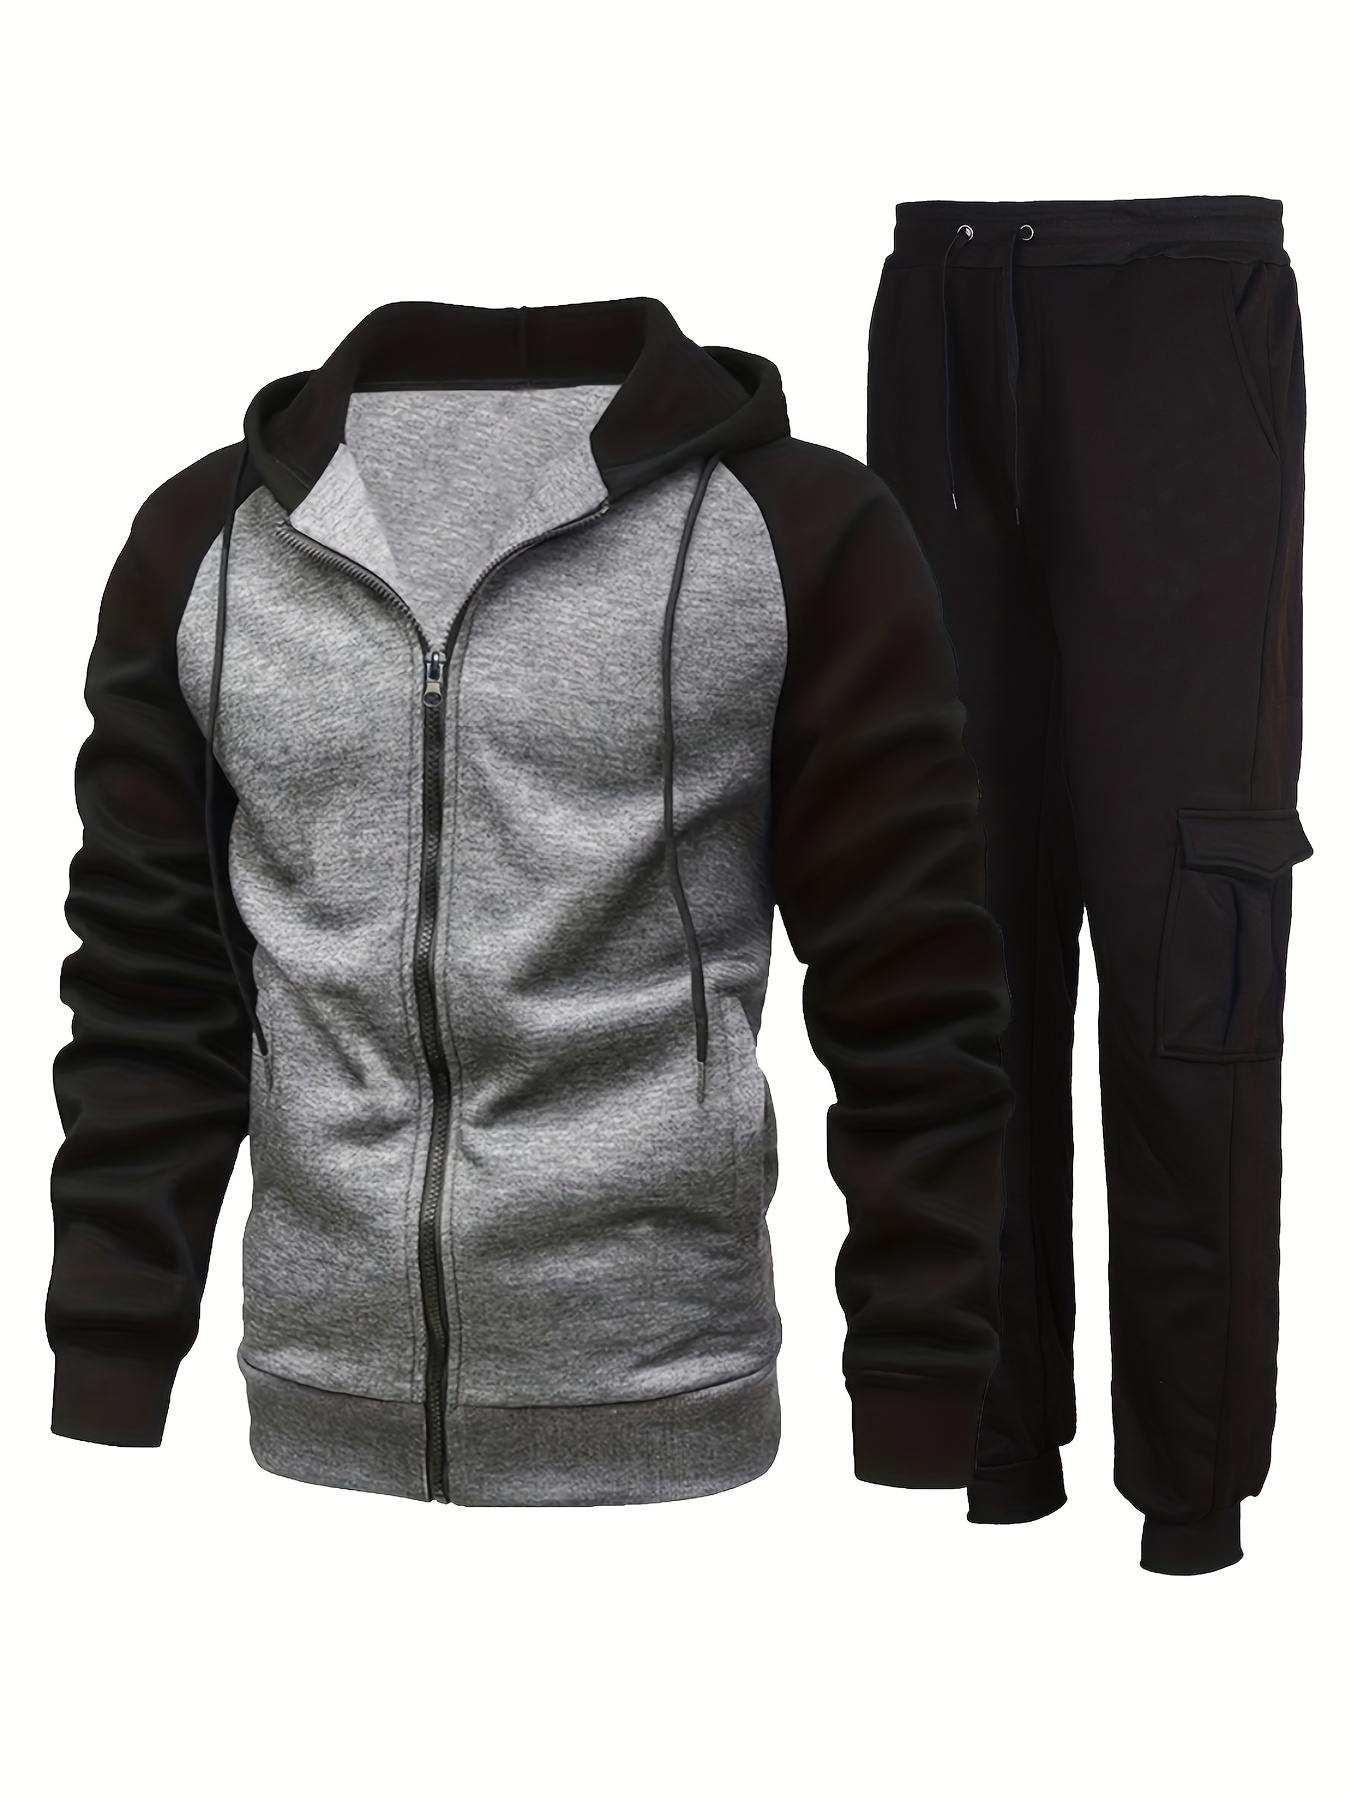 DxhmoneyHX Men Track Suits Sets Long Sleeve Full-Zip Sweatsuit Plaid Active Jackets and Jogging Pants 2 Piece Outfits, Men's, Size: XL, Black